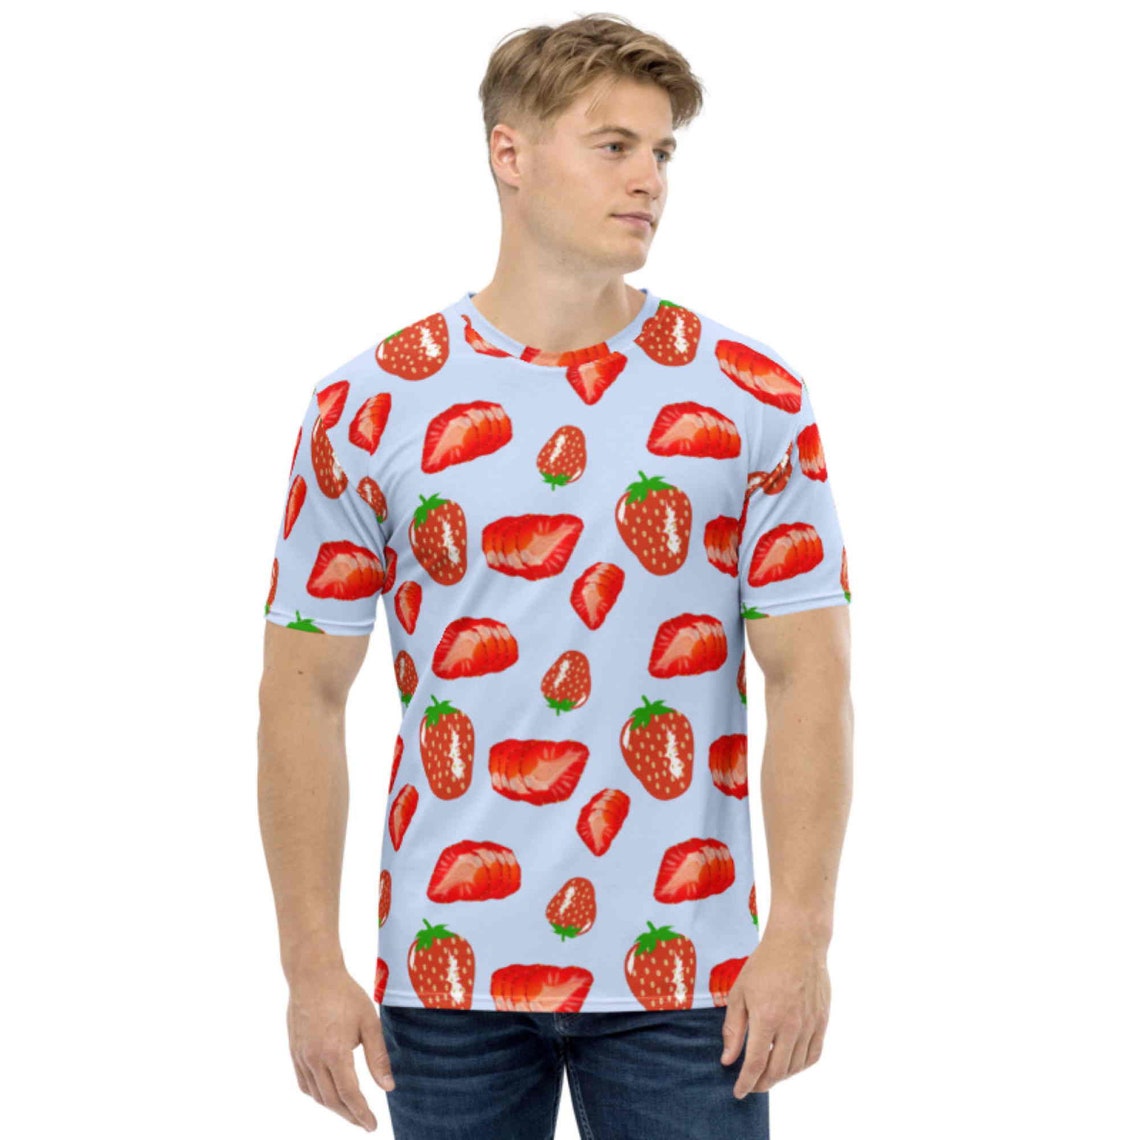 Strawberry Strawberry. Men's T-shirt - Etsy